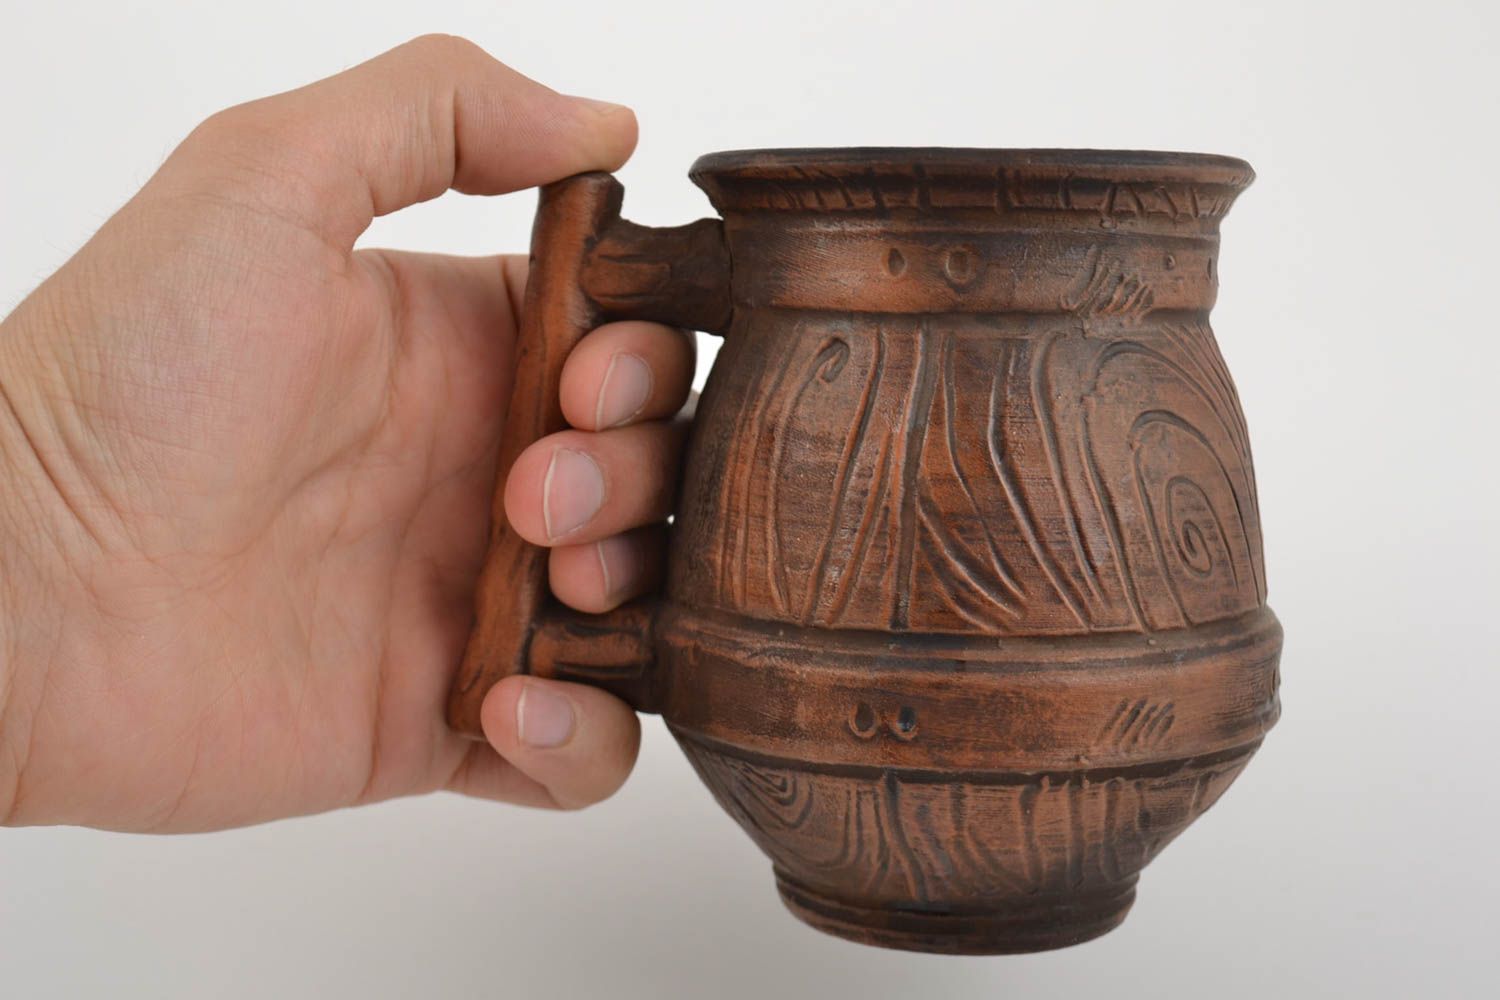 Ton Bierkrug handmade Keramik in Milchbrennen Technik groß schön 700 ml foto 2